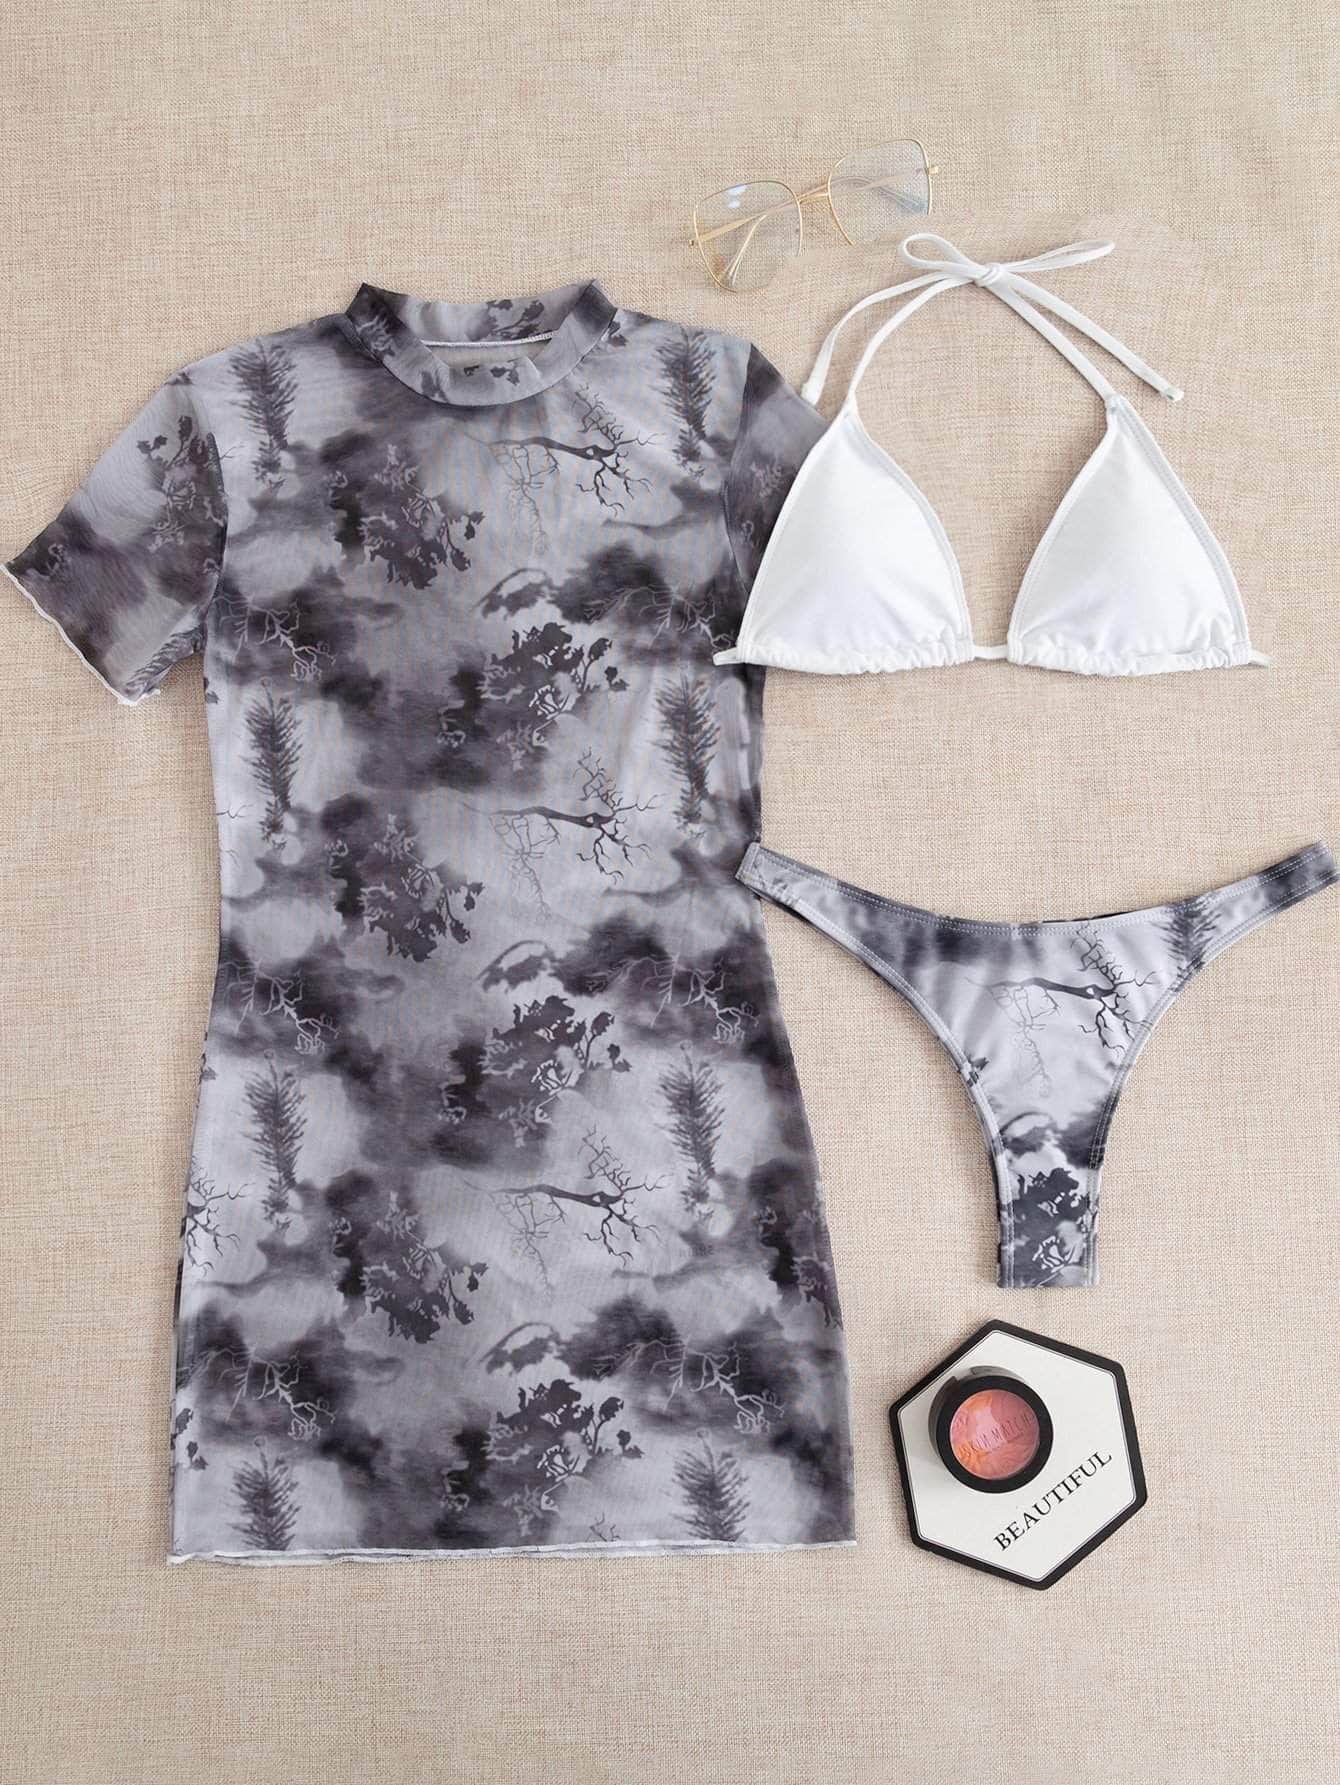 Blanco y Negro / S 3 piezas vestido de baño bikini triángulo pareo con malla